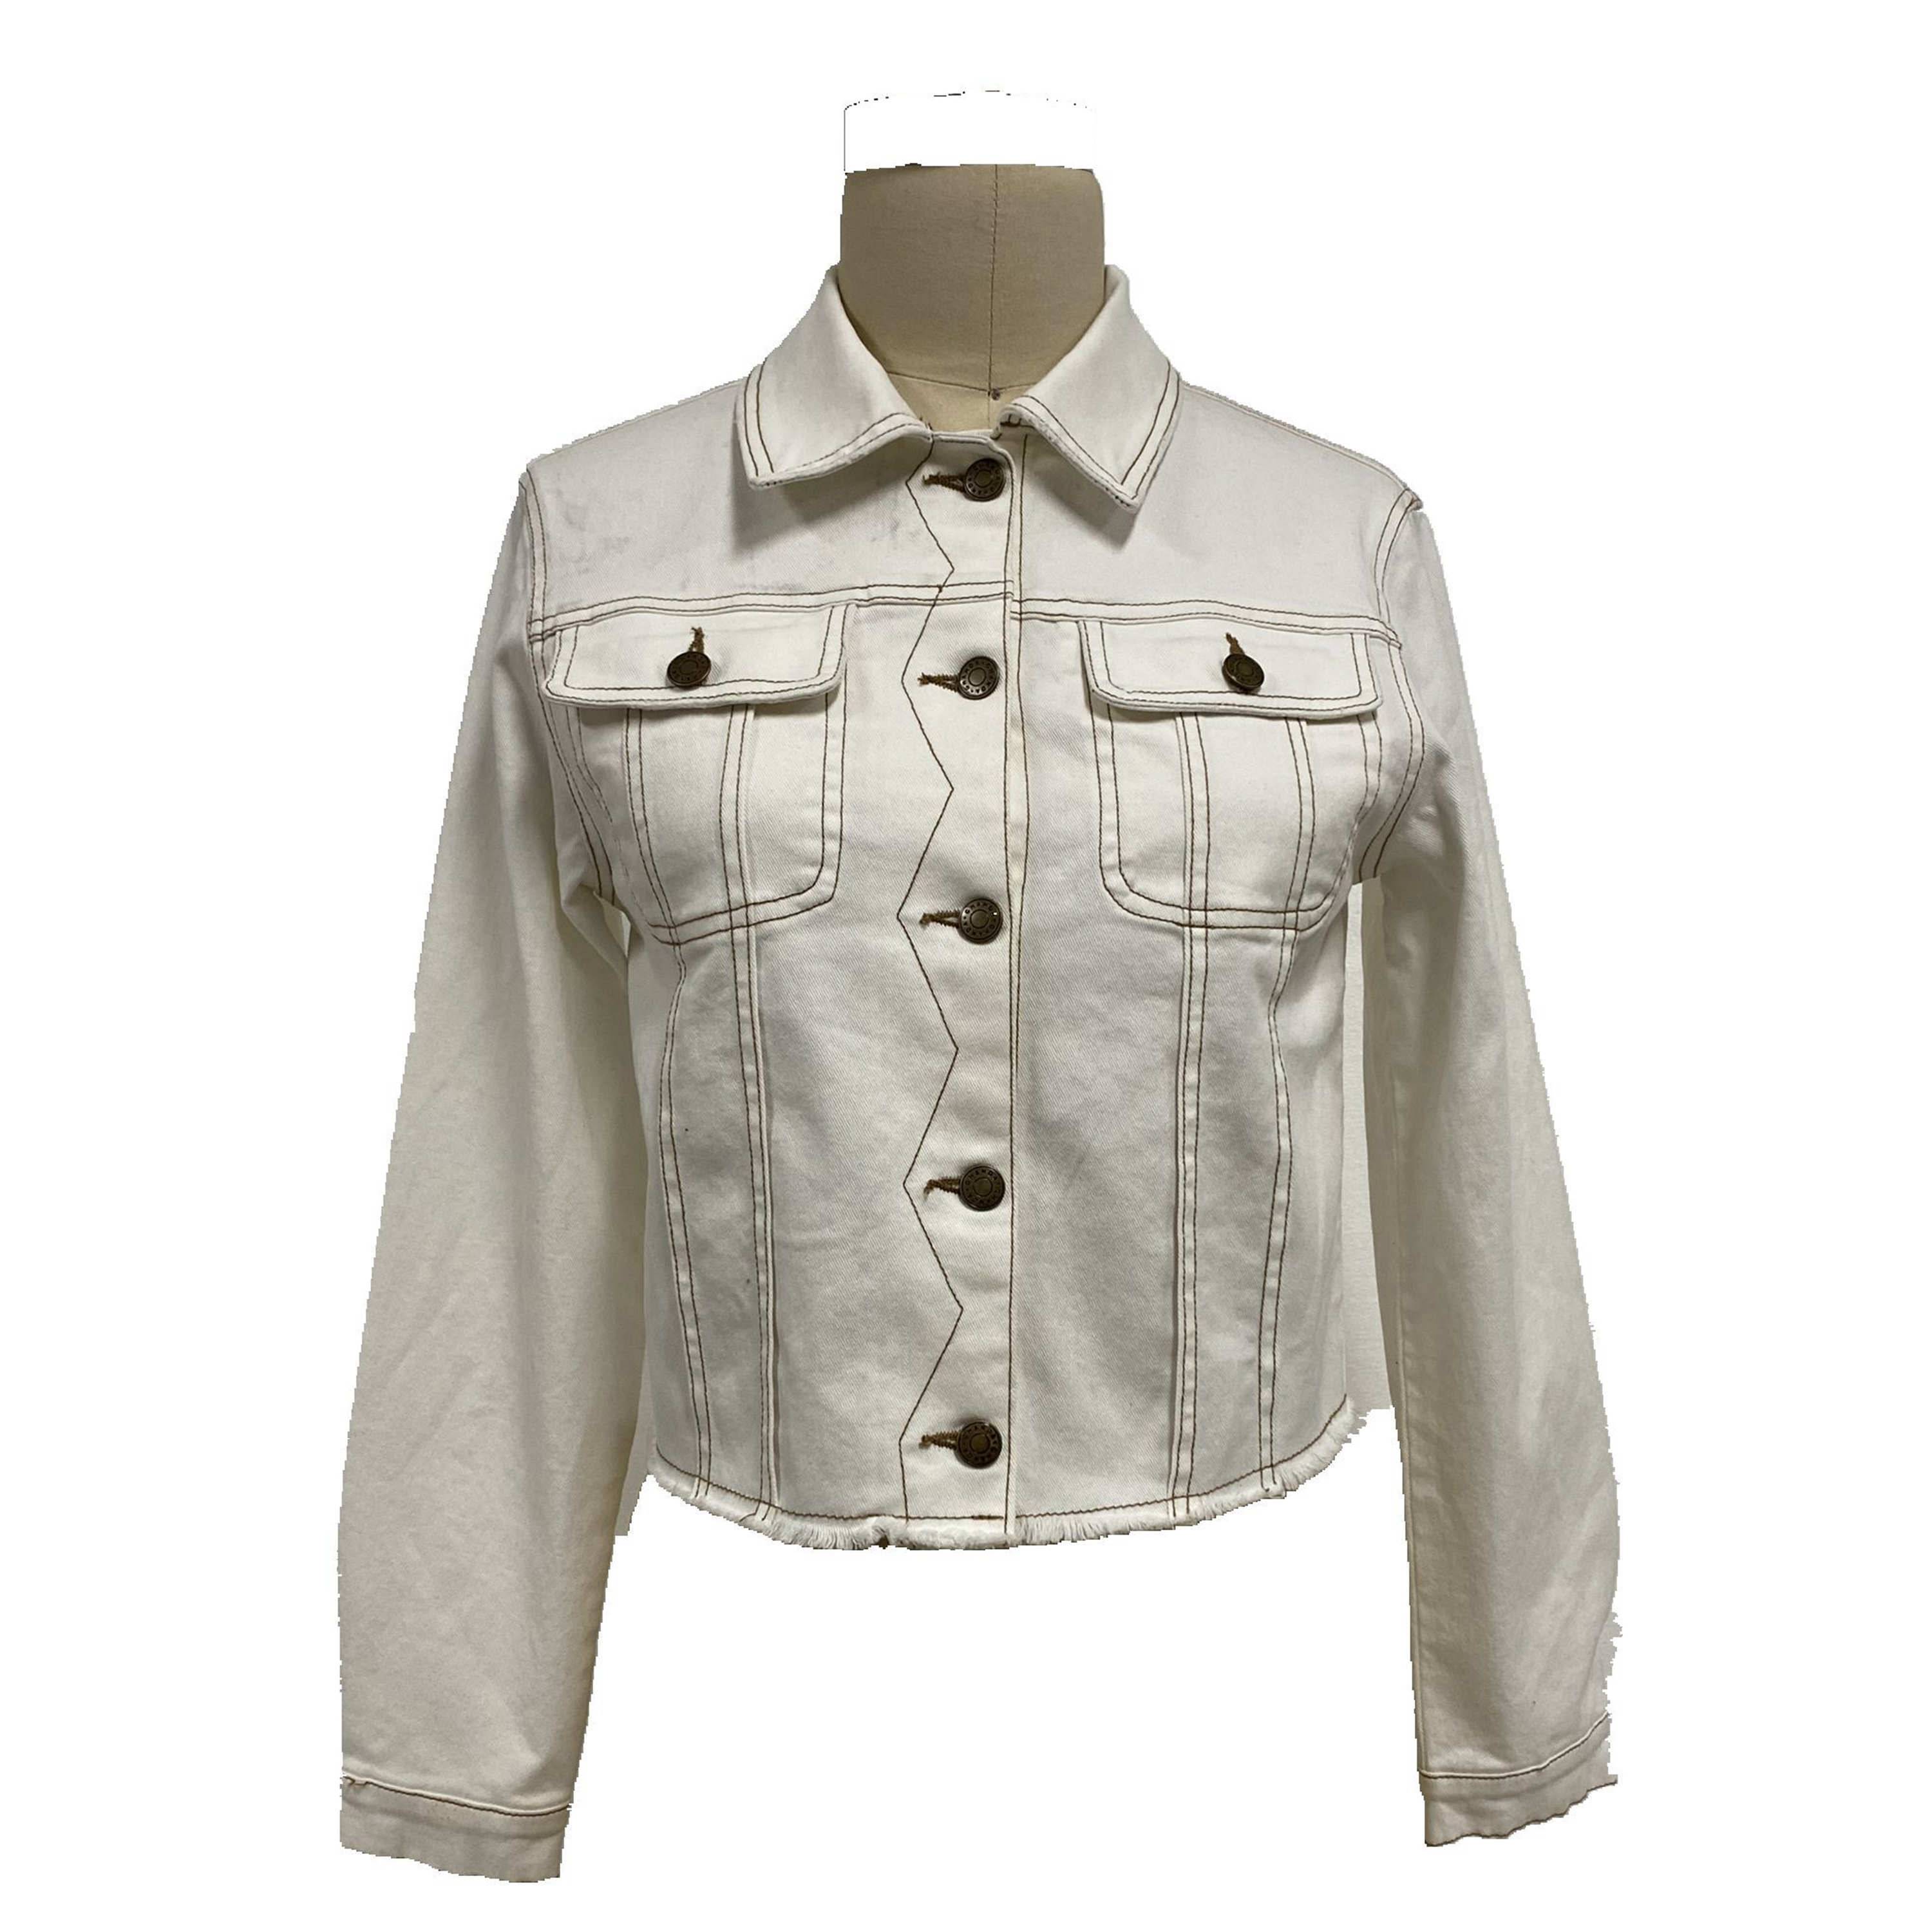 2021 moderna jeans jakna na kopčanje sa izrezom košulje i dugim rukavima, ženska veleprodaja